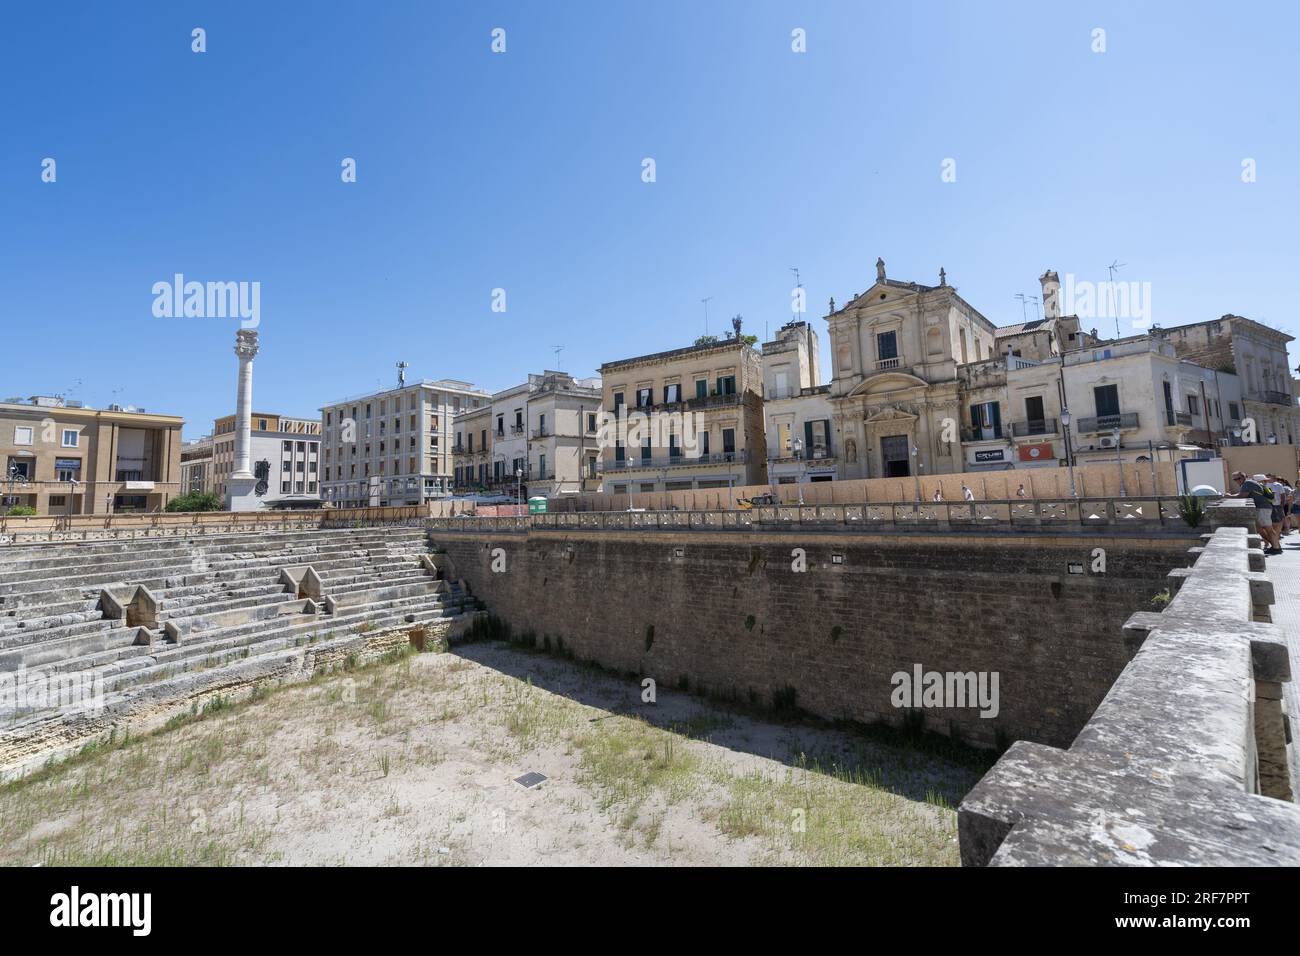 Via Giuseppe Verdi street, Roman amphitheater, Lecce, Apulia, Italy, Europe Stock Photo